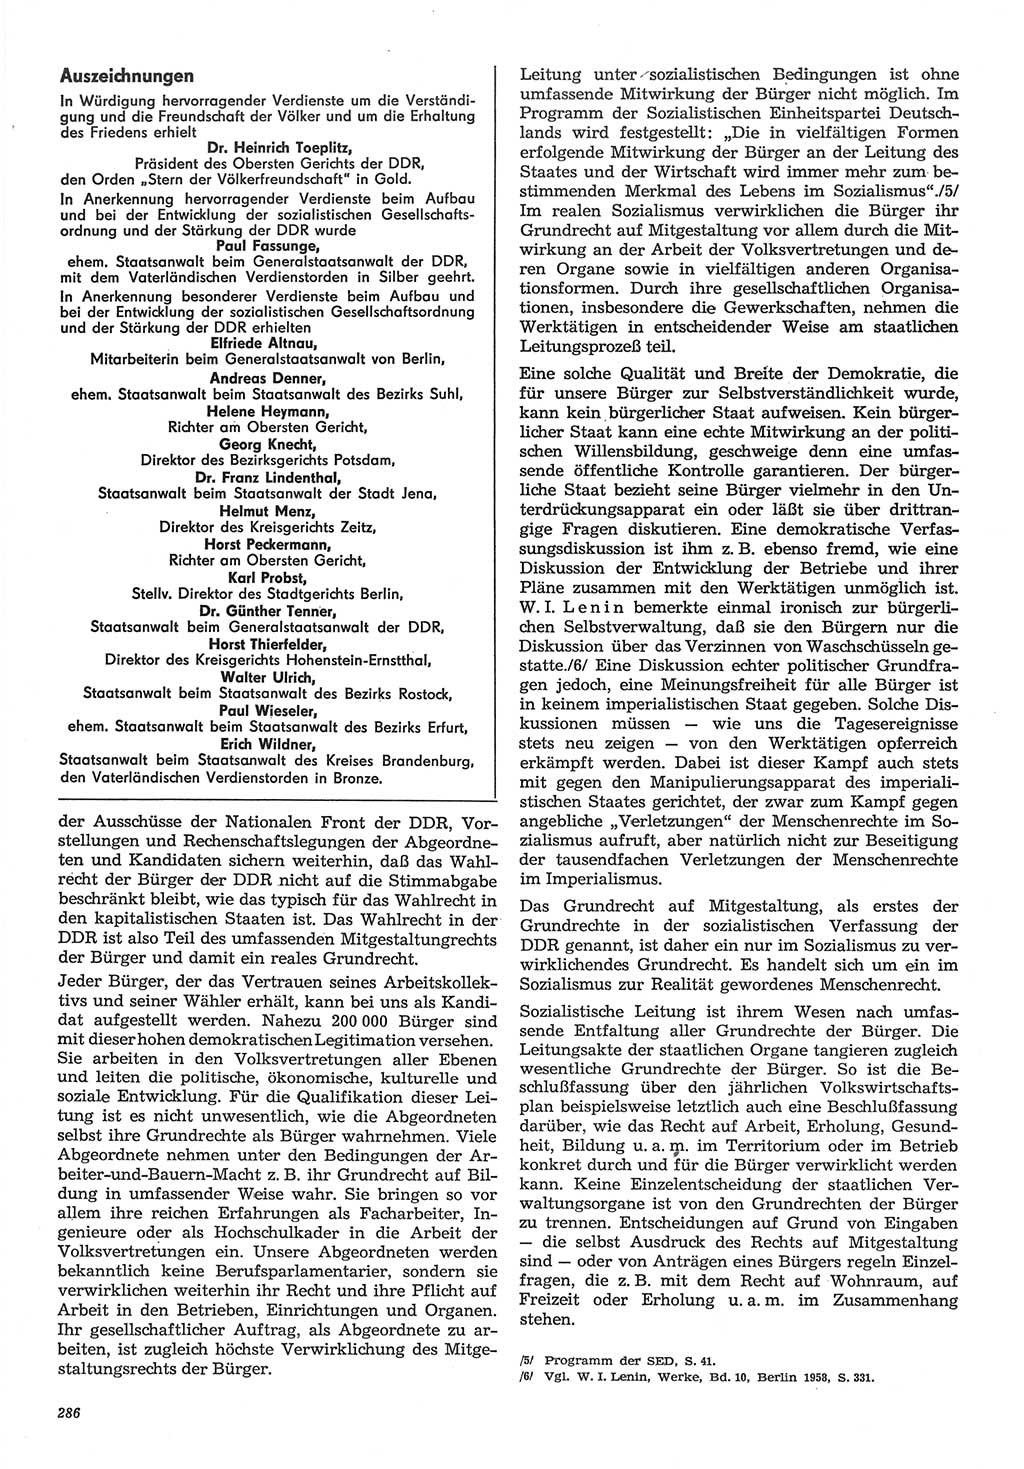 Neue Justiz (NJ), Zeitschrift für Recht und Rechtswissenschaft-Zeitschrift, sozialistisches Recht und Gesetzlichkeit, 31. Jahrgang 1977, Seite 286 (NJ DDR 1977, S. 286)